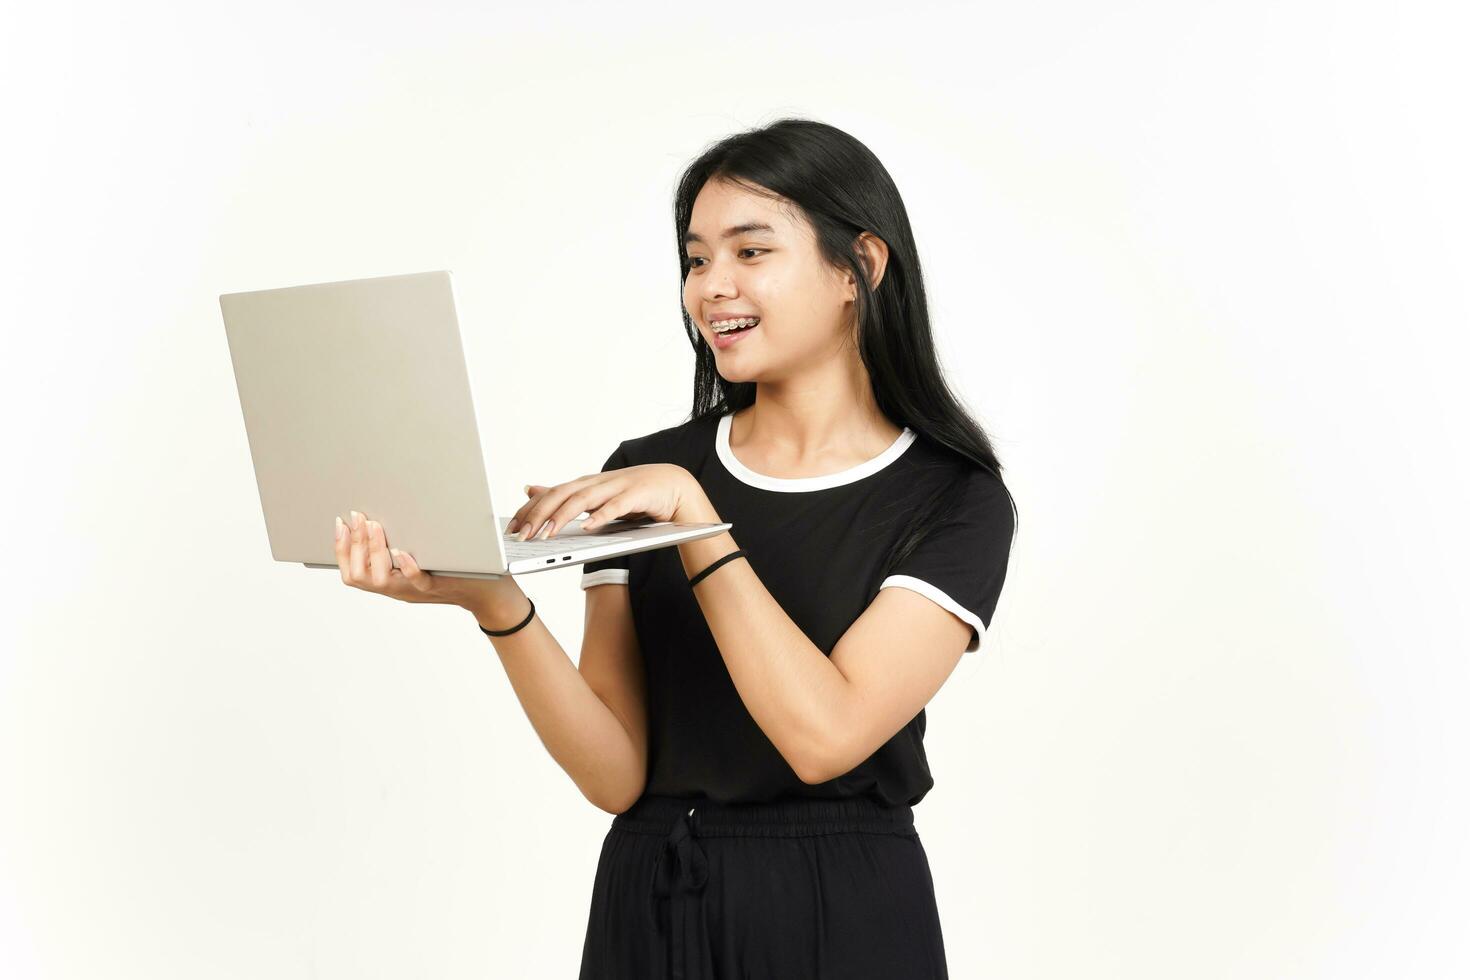 lächelnd und mit Laptop von schön asiatisch Frau isoliert auf Weiß Hintergrund foto